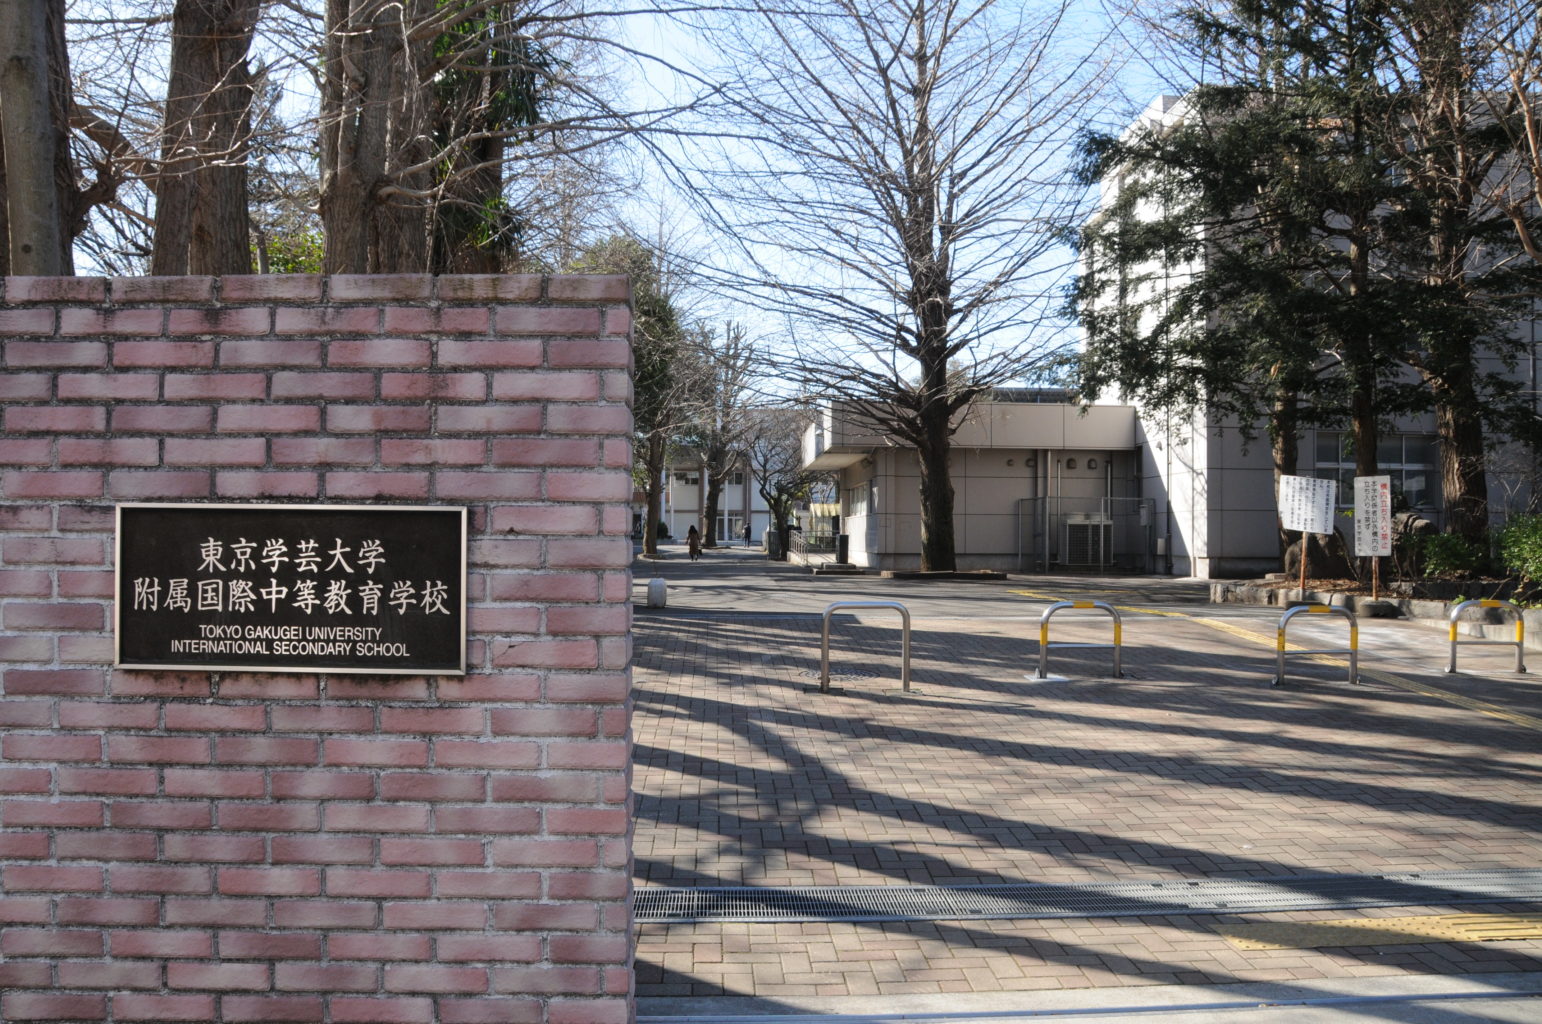 東京学芸大附属国際中等教育学校の写真。公式ホームページより引用。